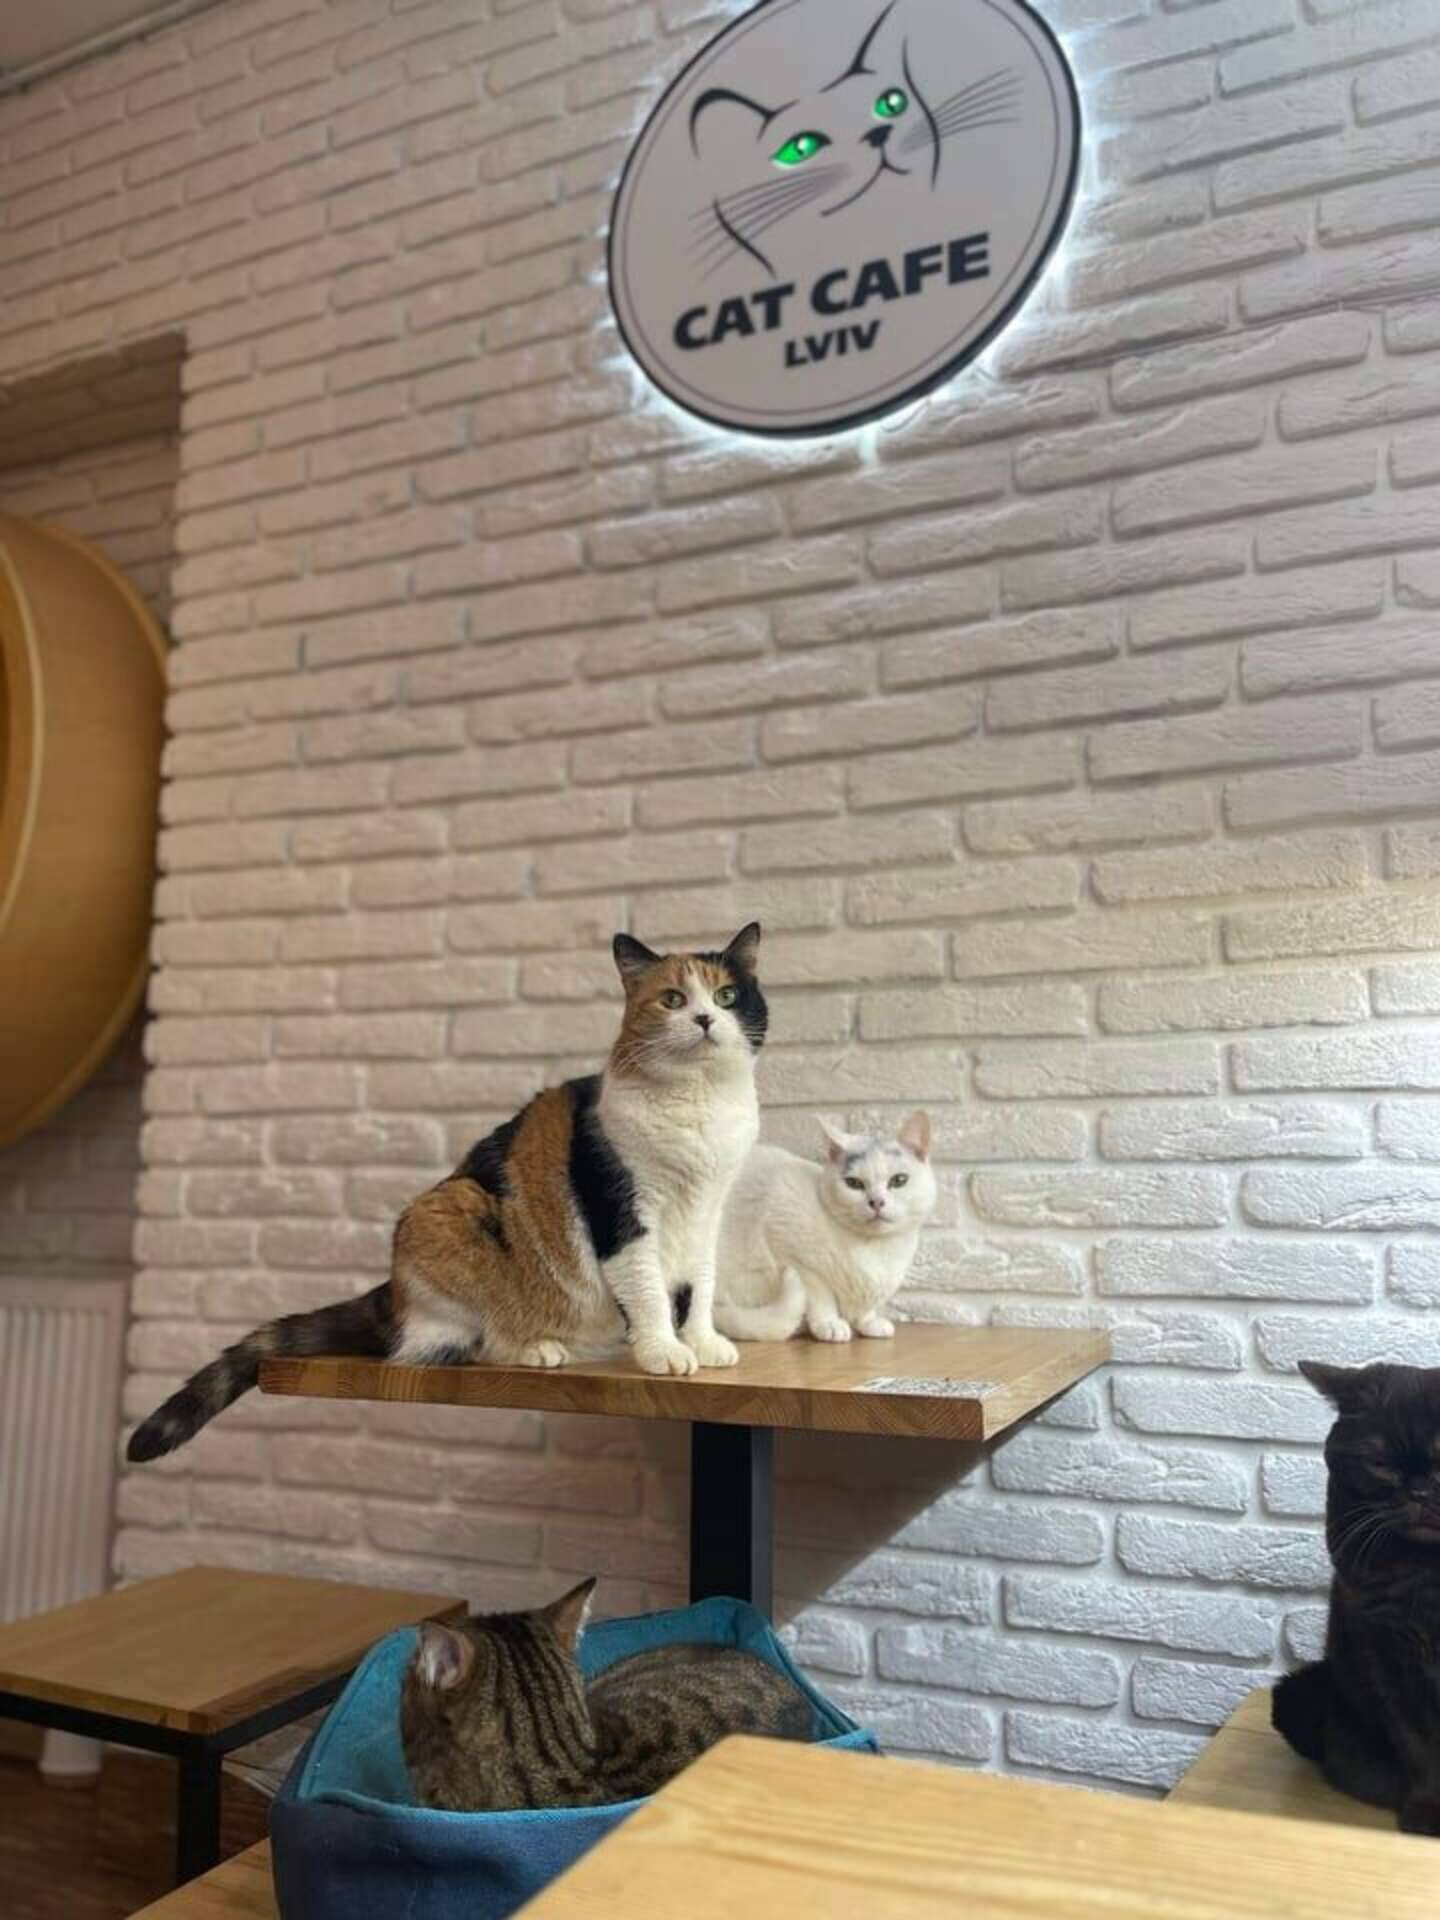 Gatos fazem companhia aos clientes da cafeteria e amam receber carinhos. Foto: Cat Cafe Lviv